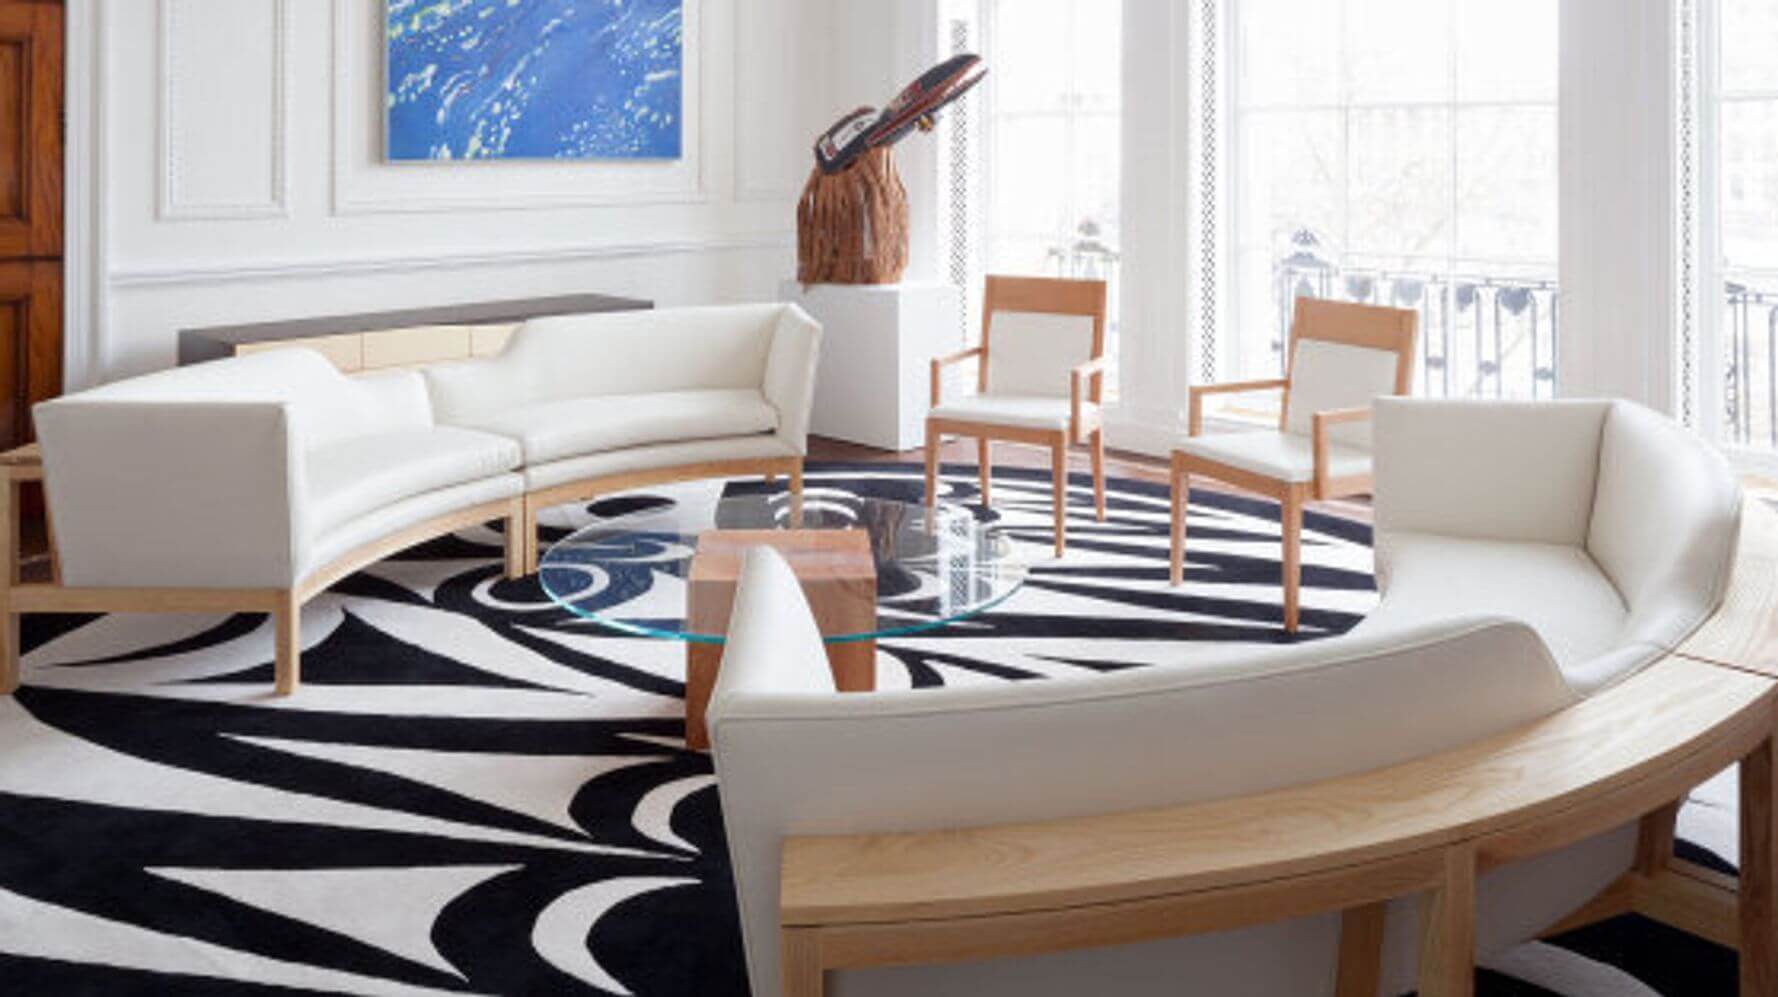 Rug Up the Floors for apartment Decor ideas